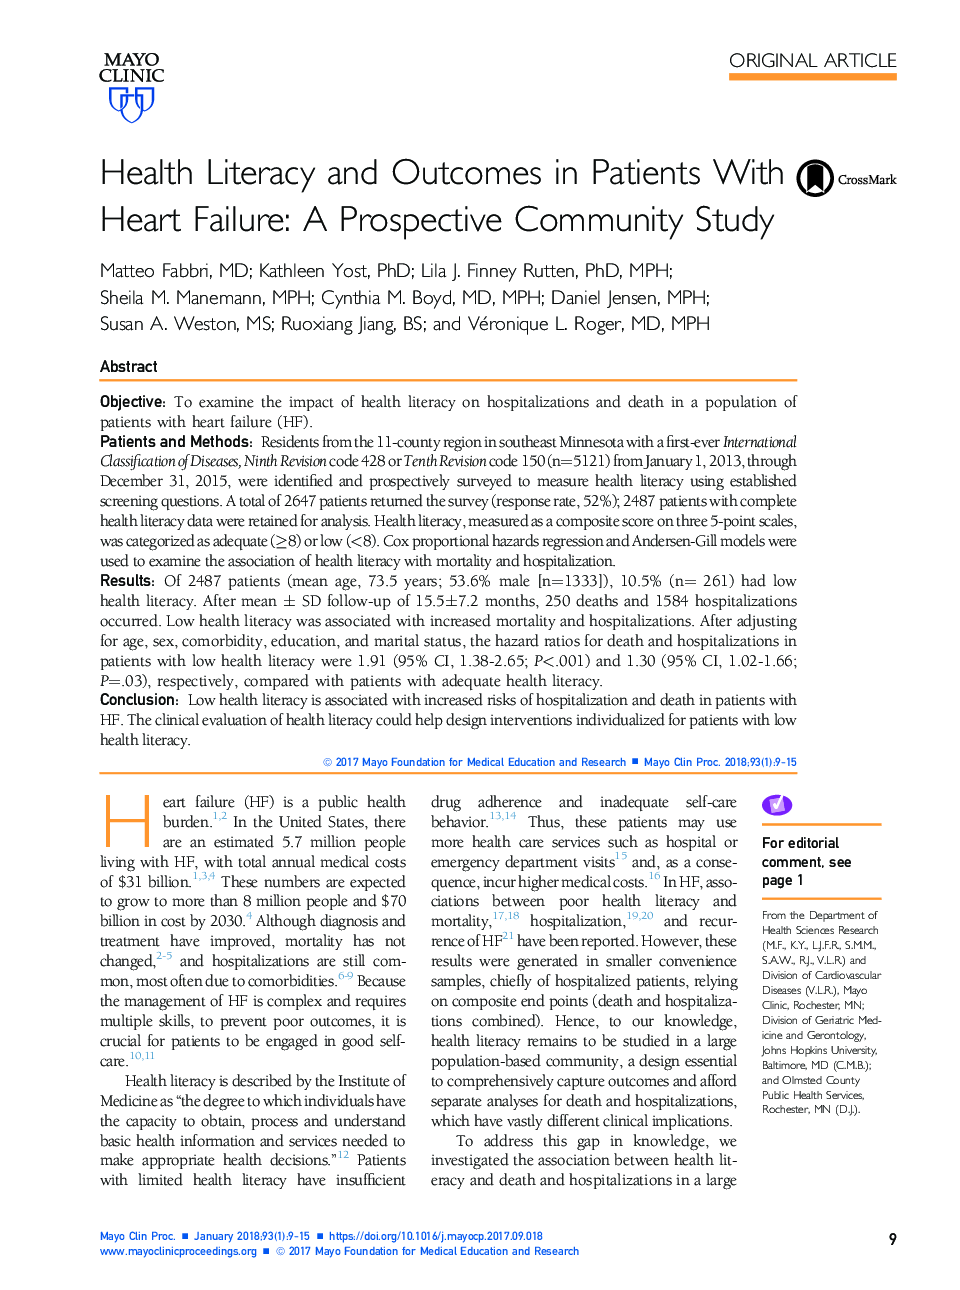 سواد بهداشتی و نتایج در بیماران مبتلا به نارسایی قلب: مطالعات جامعه مورد مطالعه 